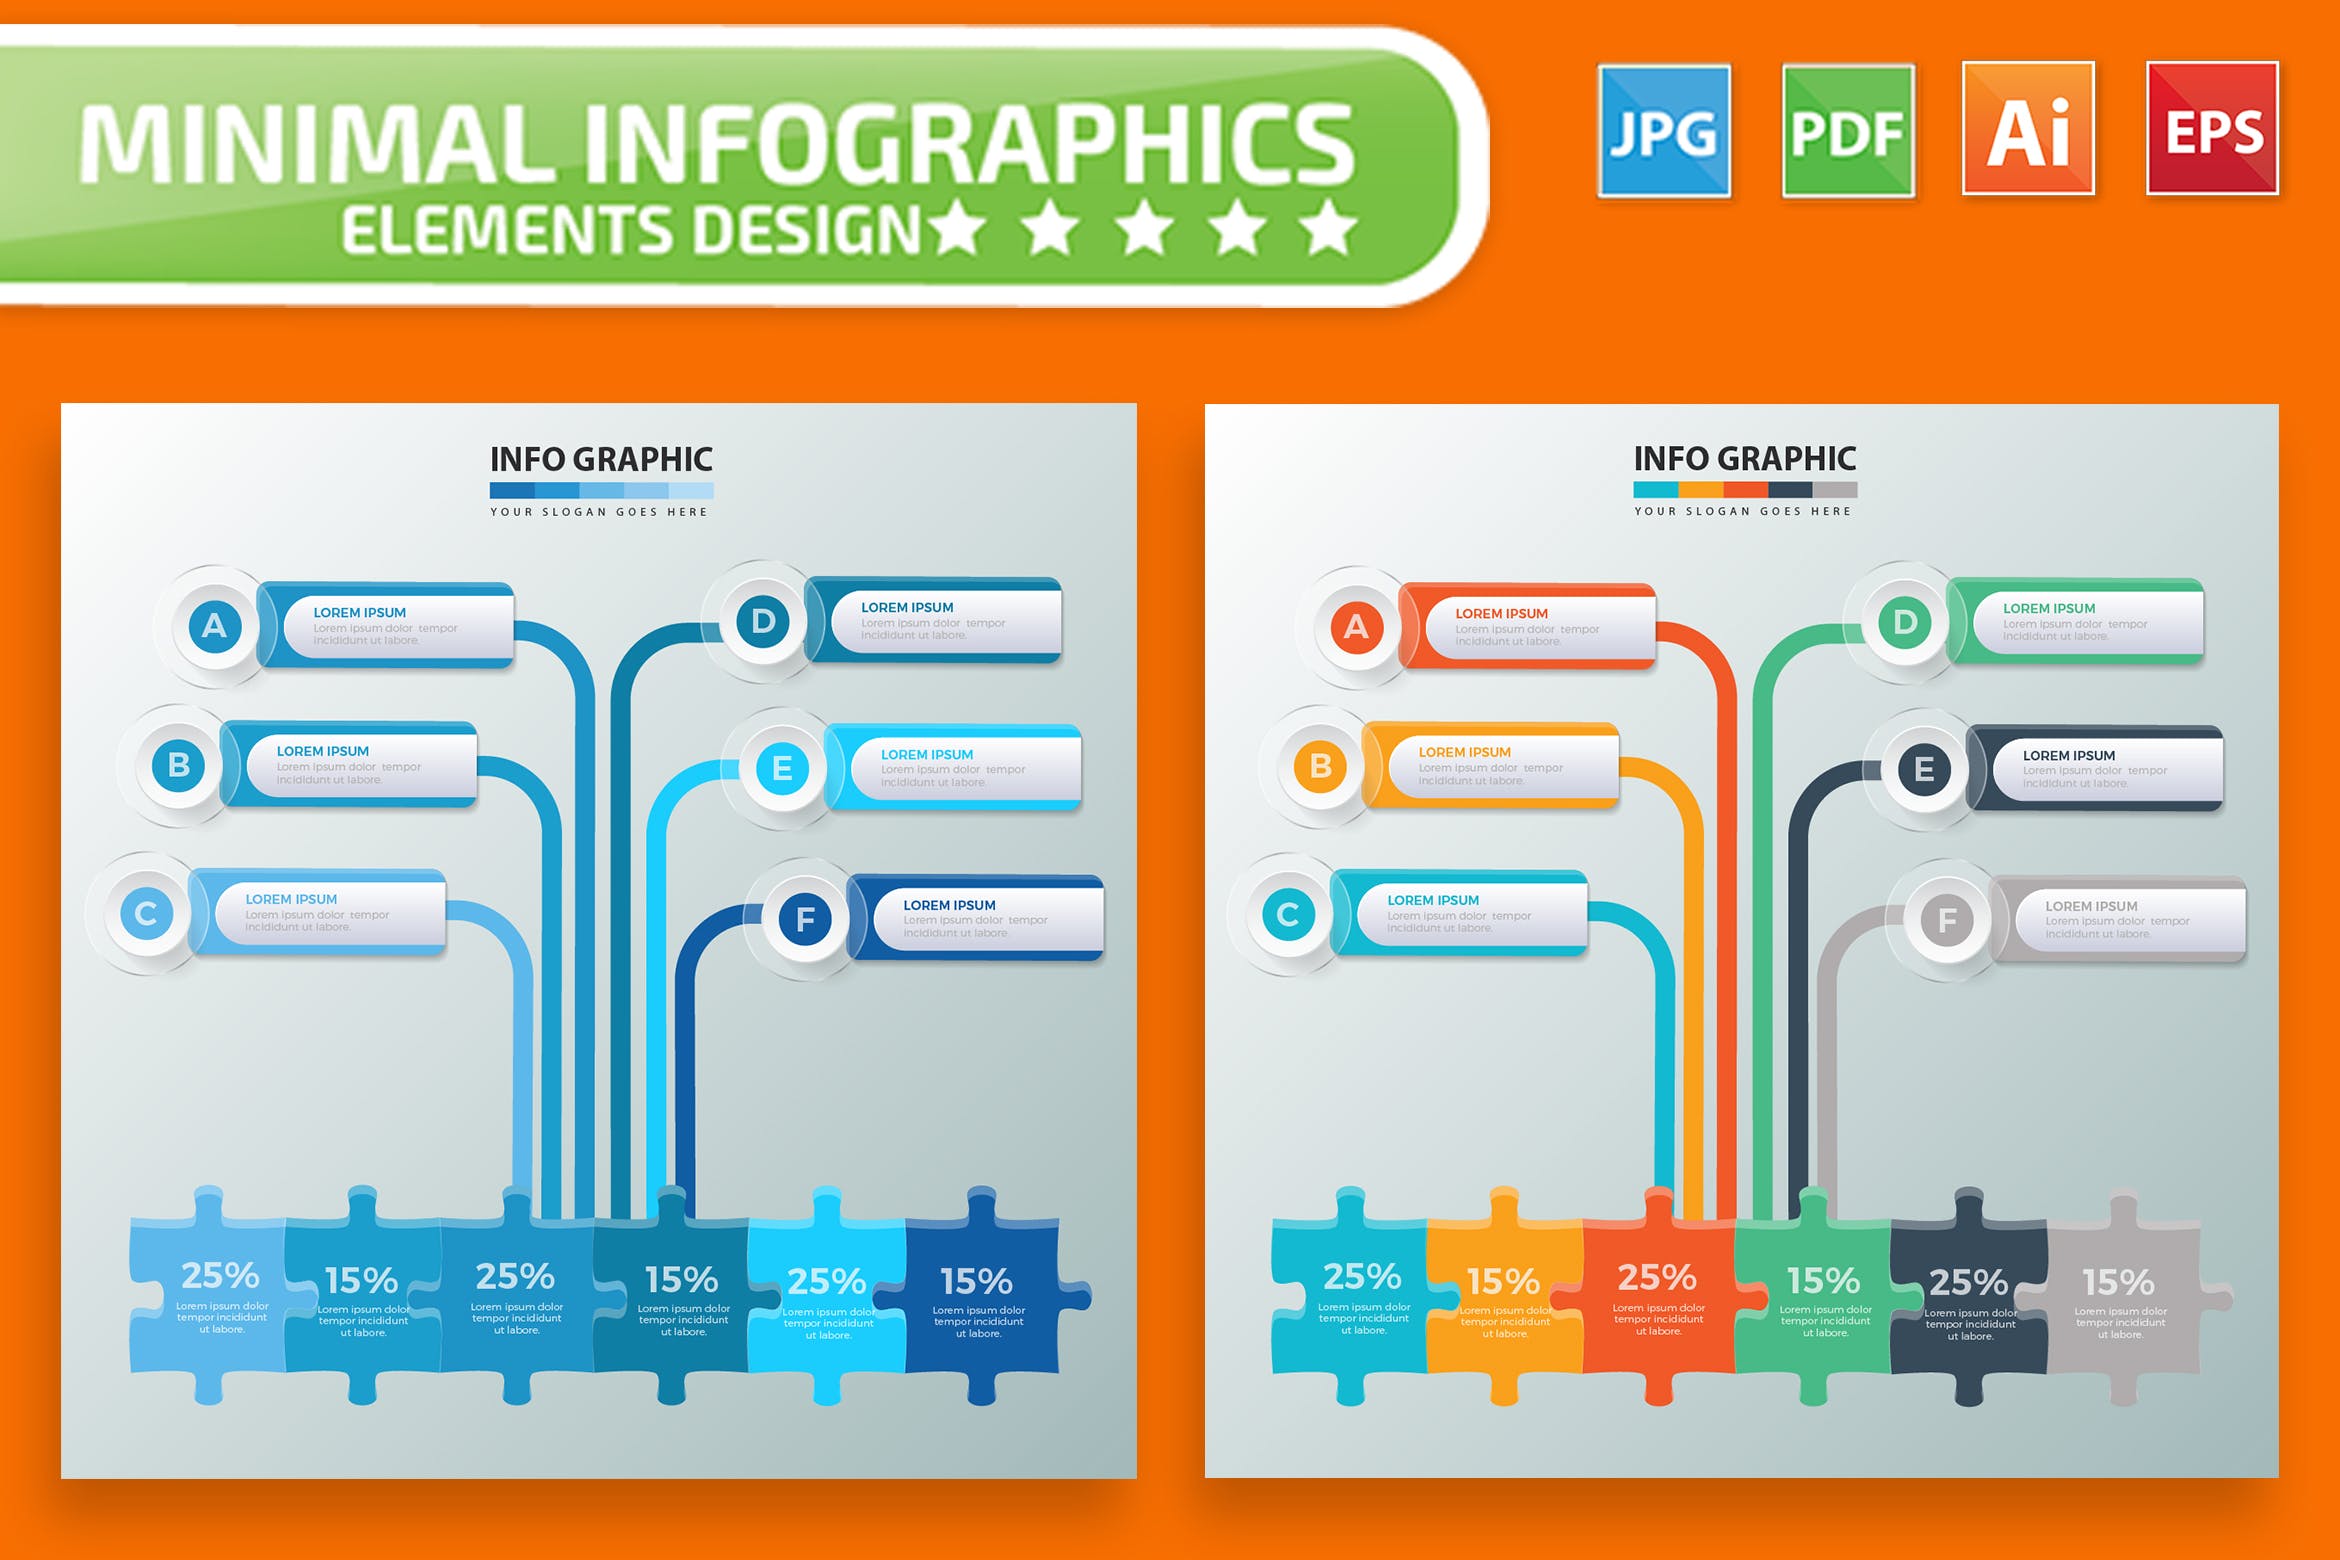 流程步骤树状图信息图表设计素材 Infographic Elements Design插图